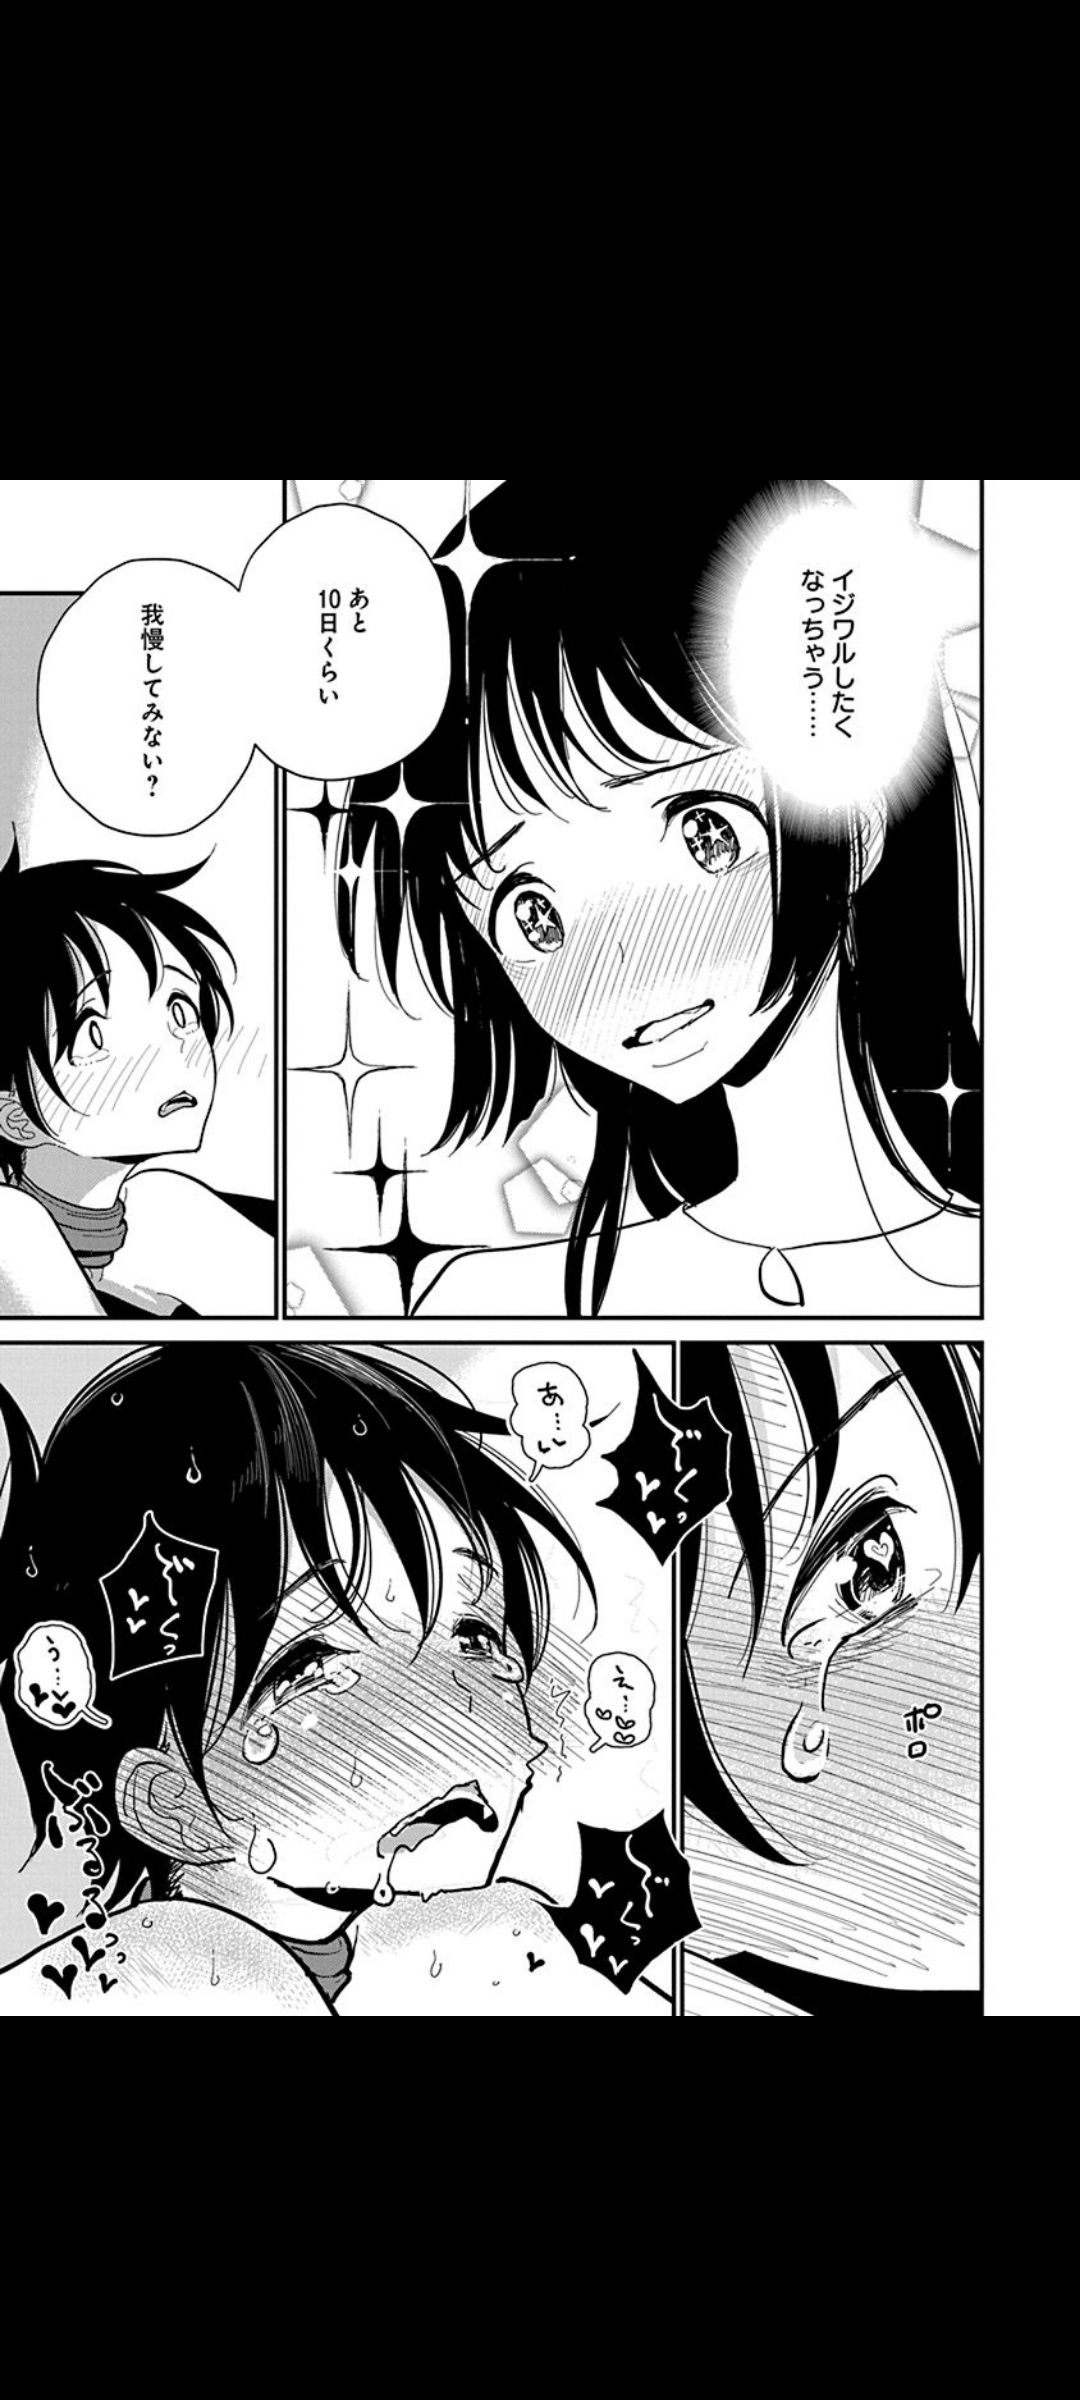 【Image】General manga with terrible erotic scenes Part 33 14